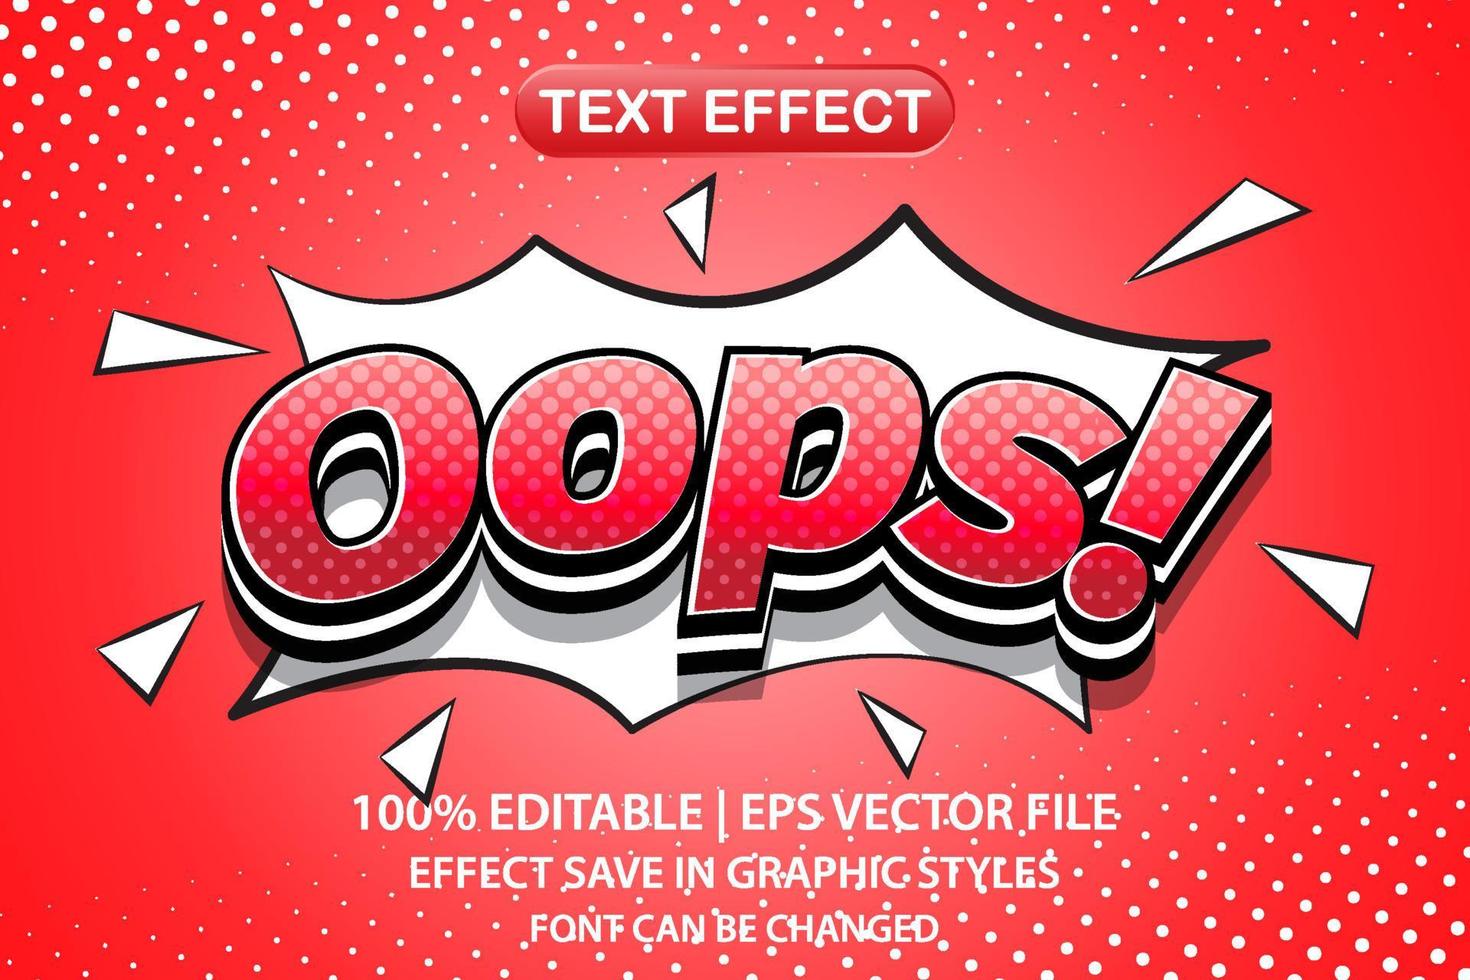 Uy efecto de texto editable 3d vector